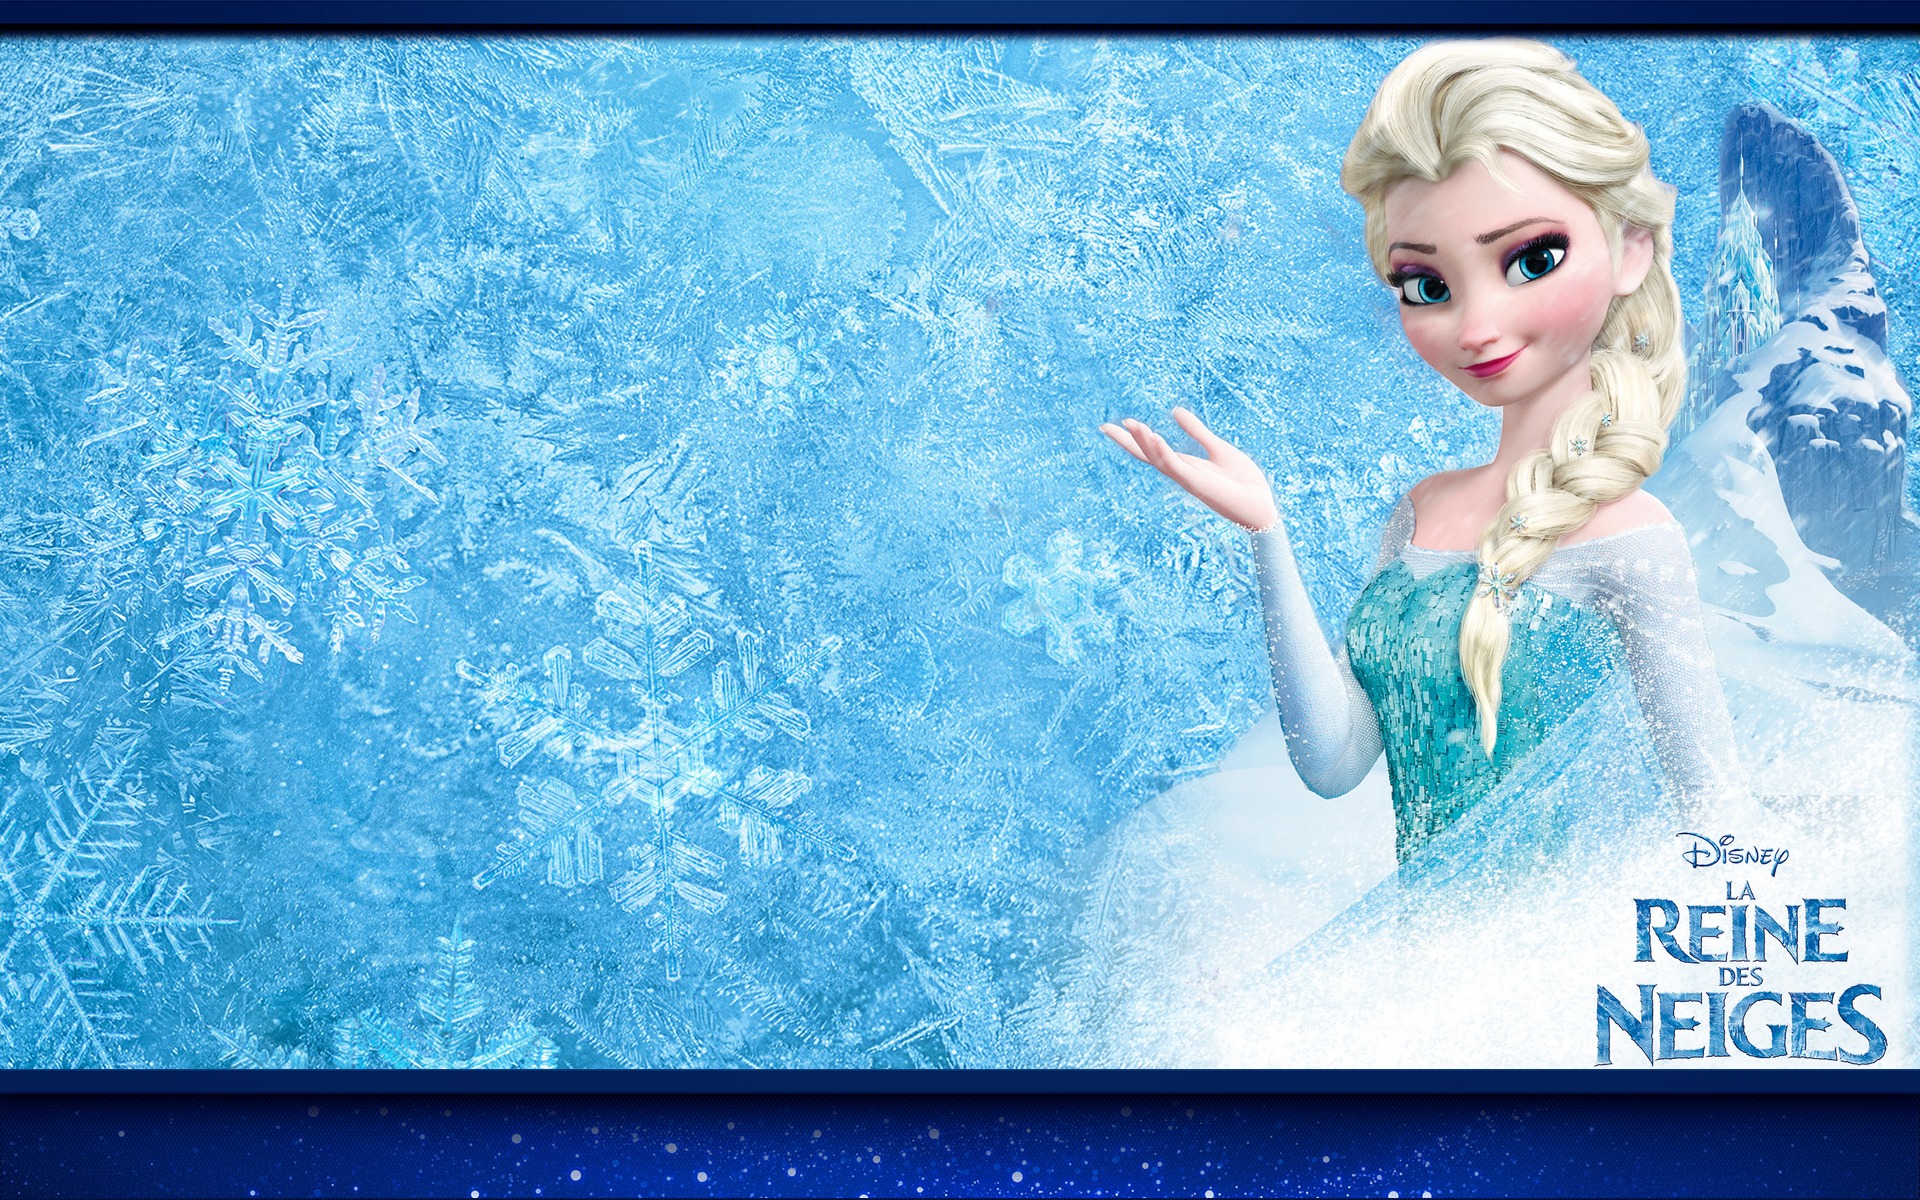 La Reine des neiges Elsa Fond d'écran - Image arrière-plan - Wallpaper Favorisxp